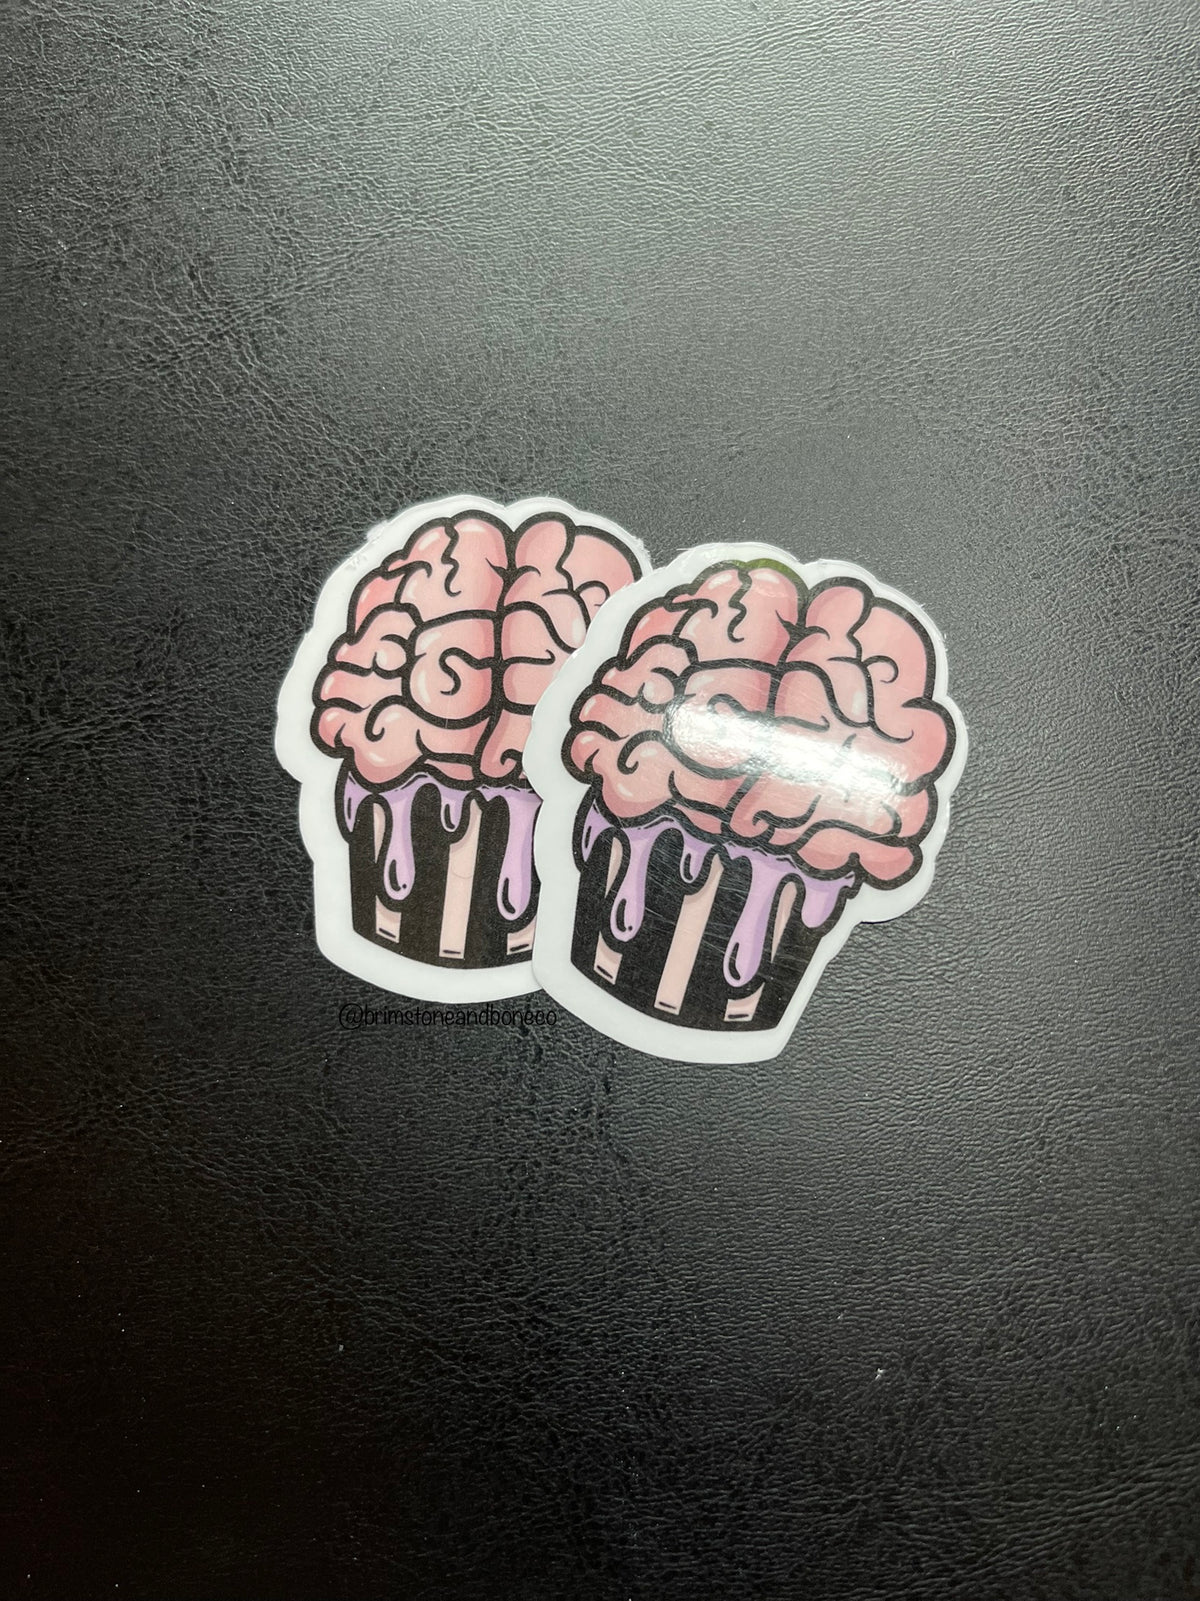 Sweet Brains Vinyl Sticker